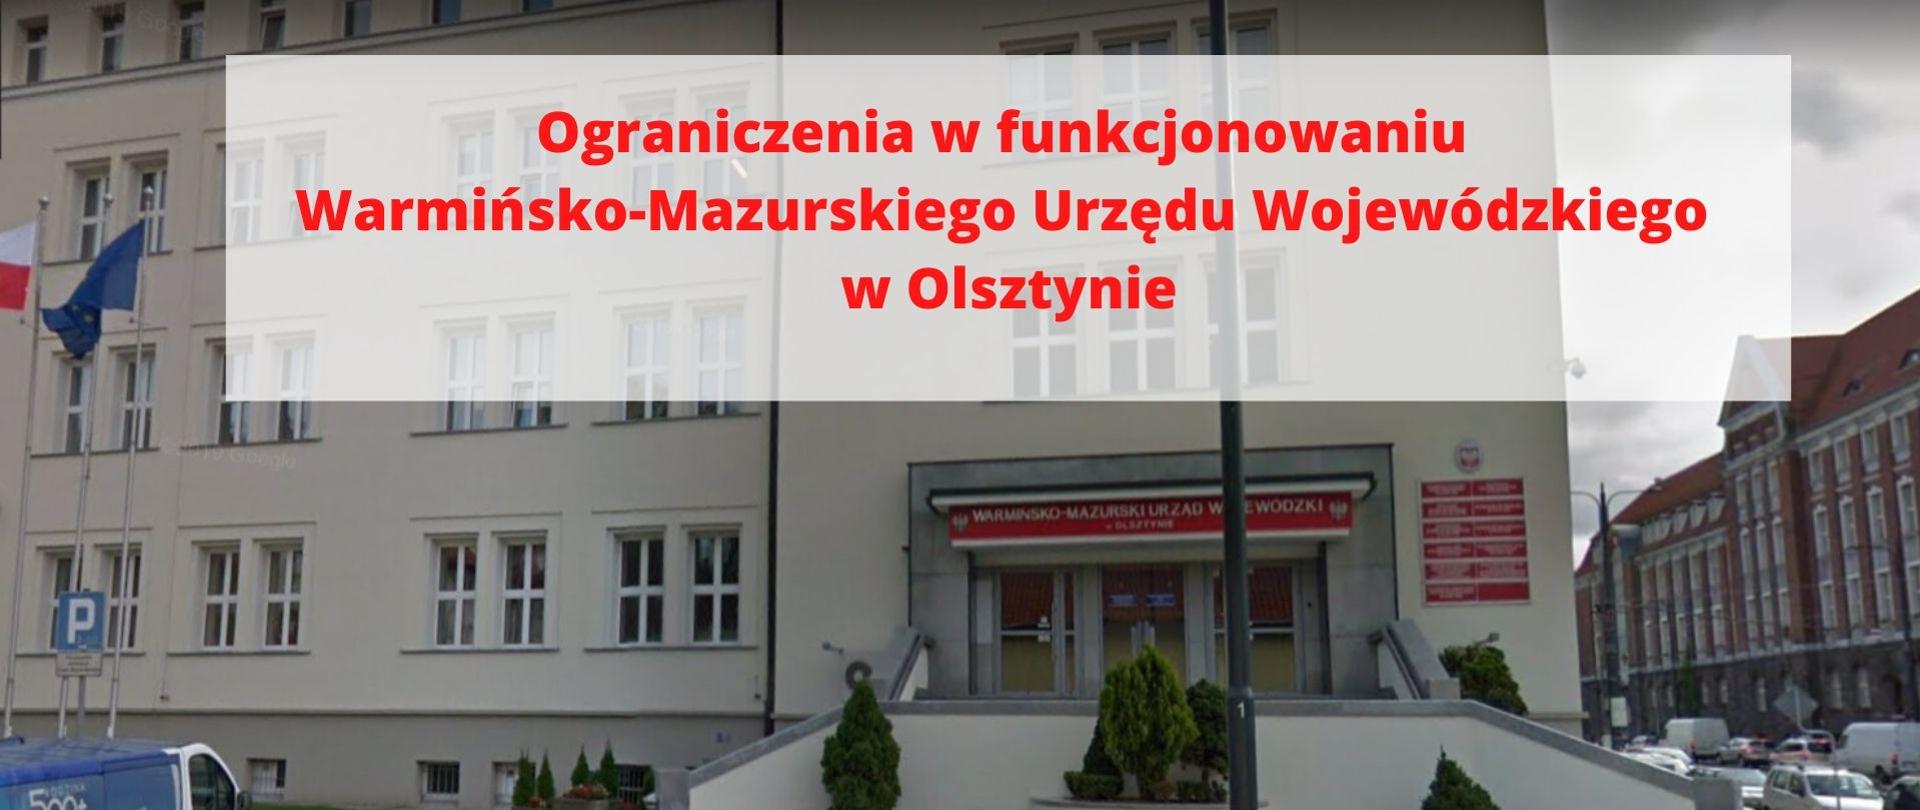 ograniczenia w funkcjonowaniu Warmińsko-Mazurskiego Urzędu Wojewódzkiego w Olsztynie